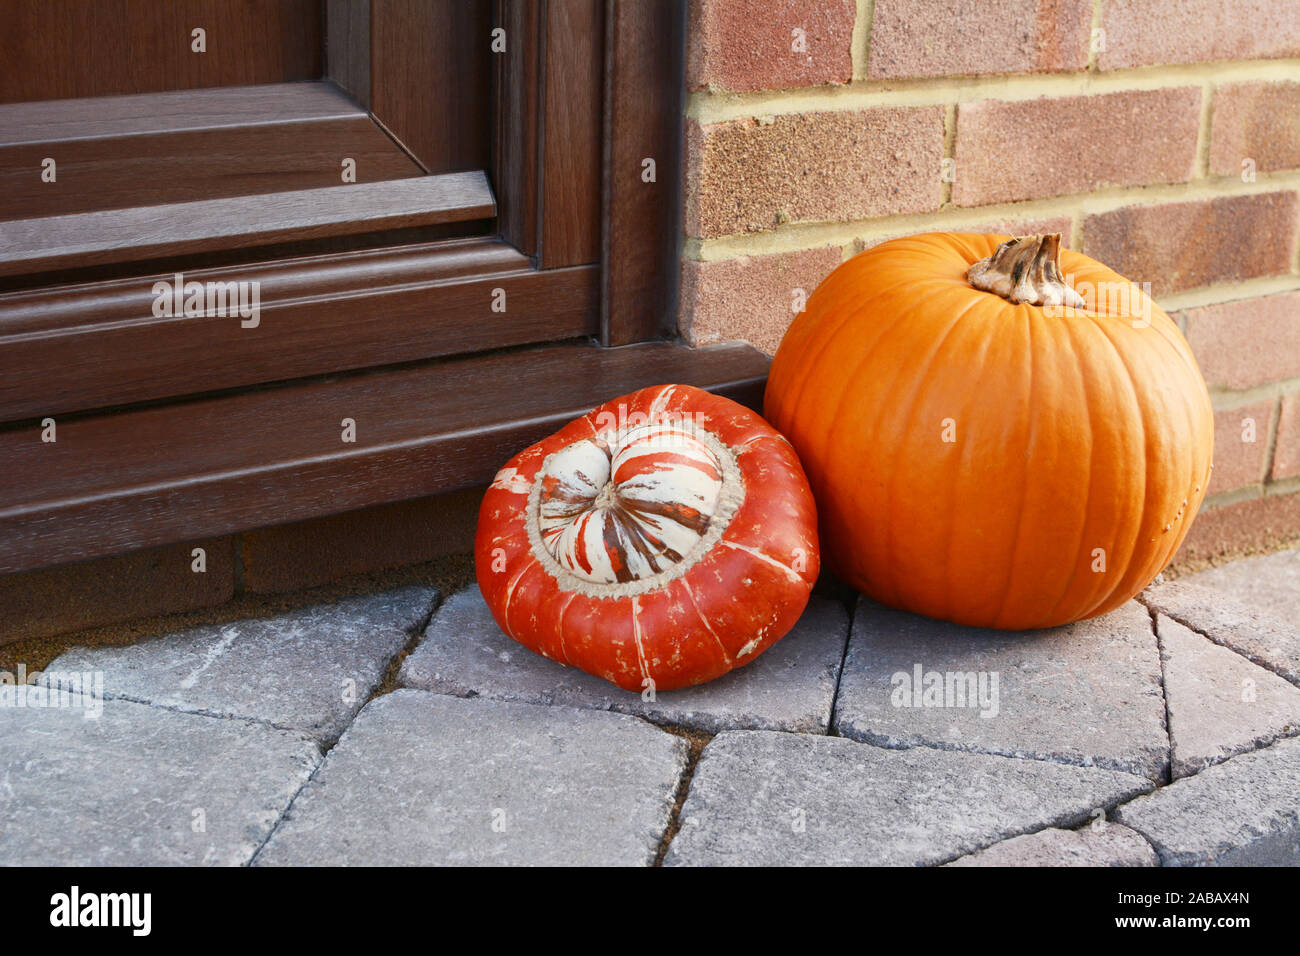 Turcs et une courge Turban orange citrouille comme décoration d'automne sur une pierre de la porte avec copie espace Banque D'Images